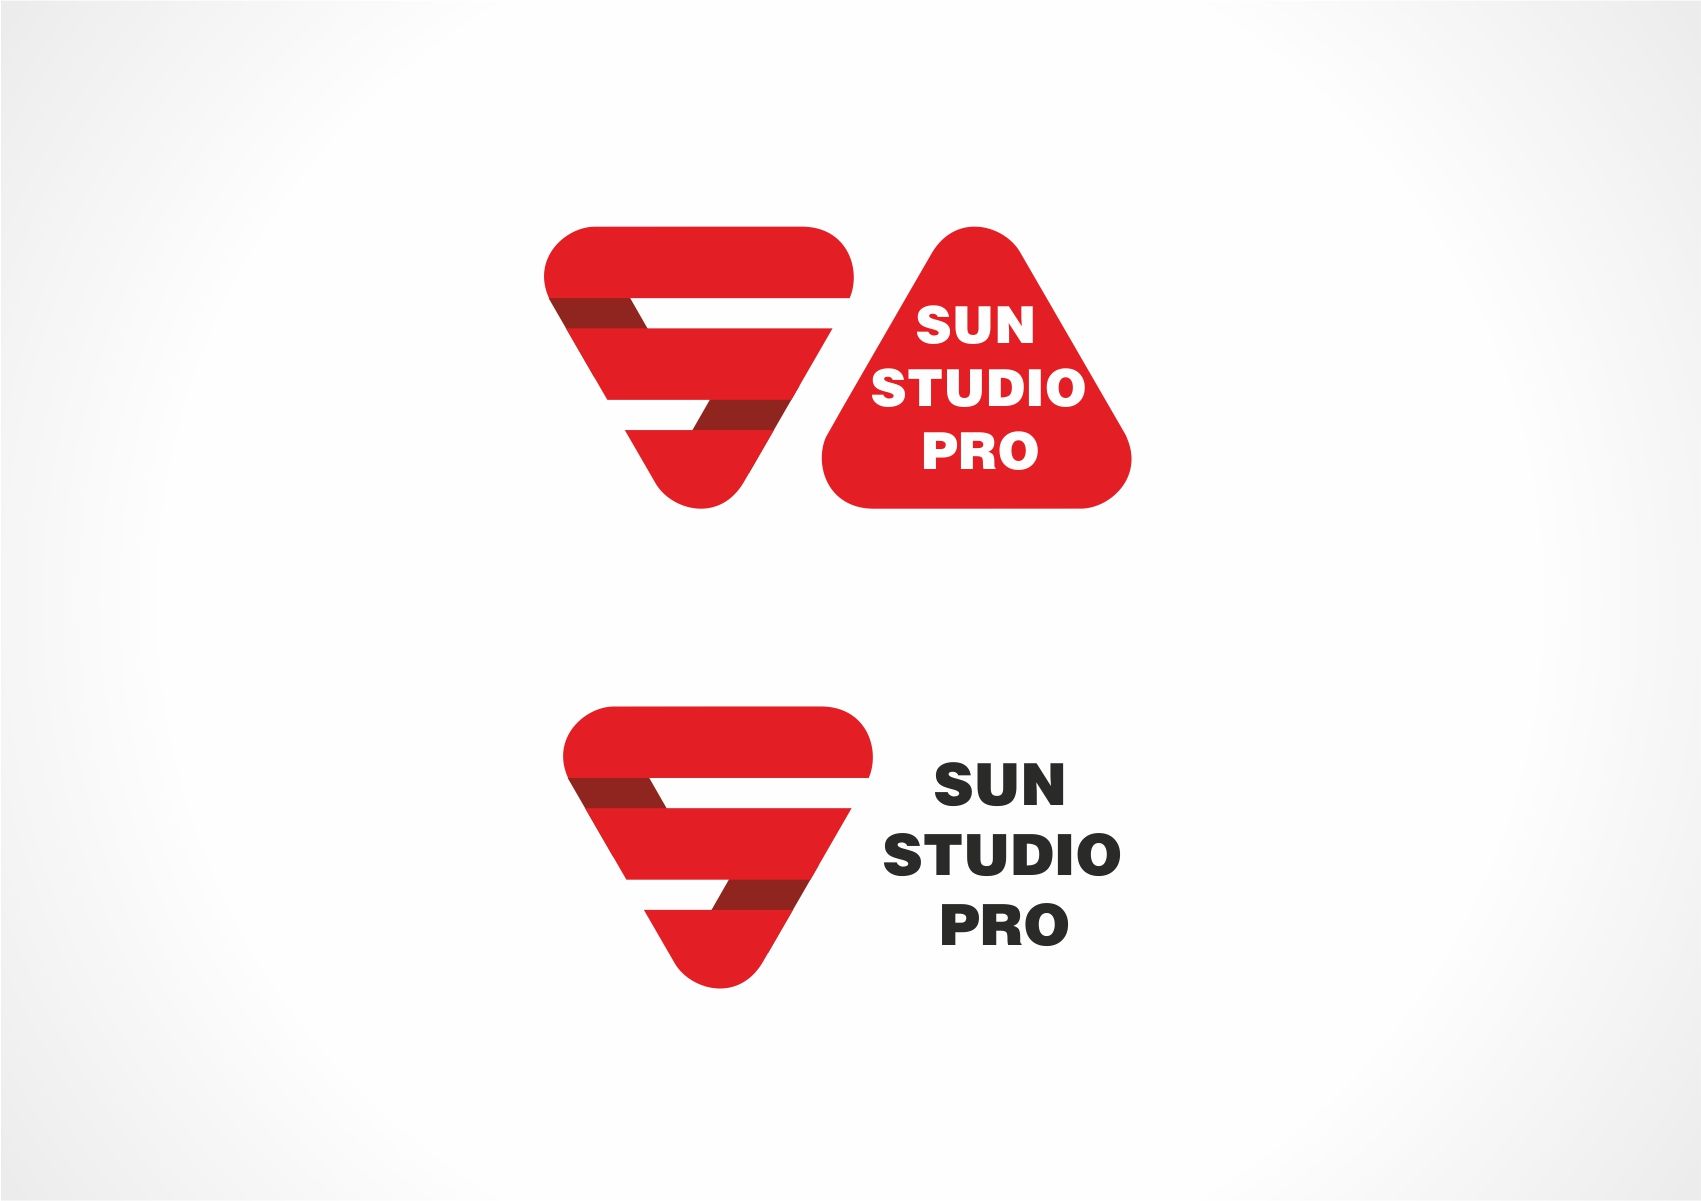 Логотип студии интерьерной печати - дизайнер designer79